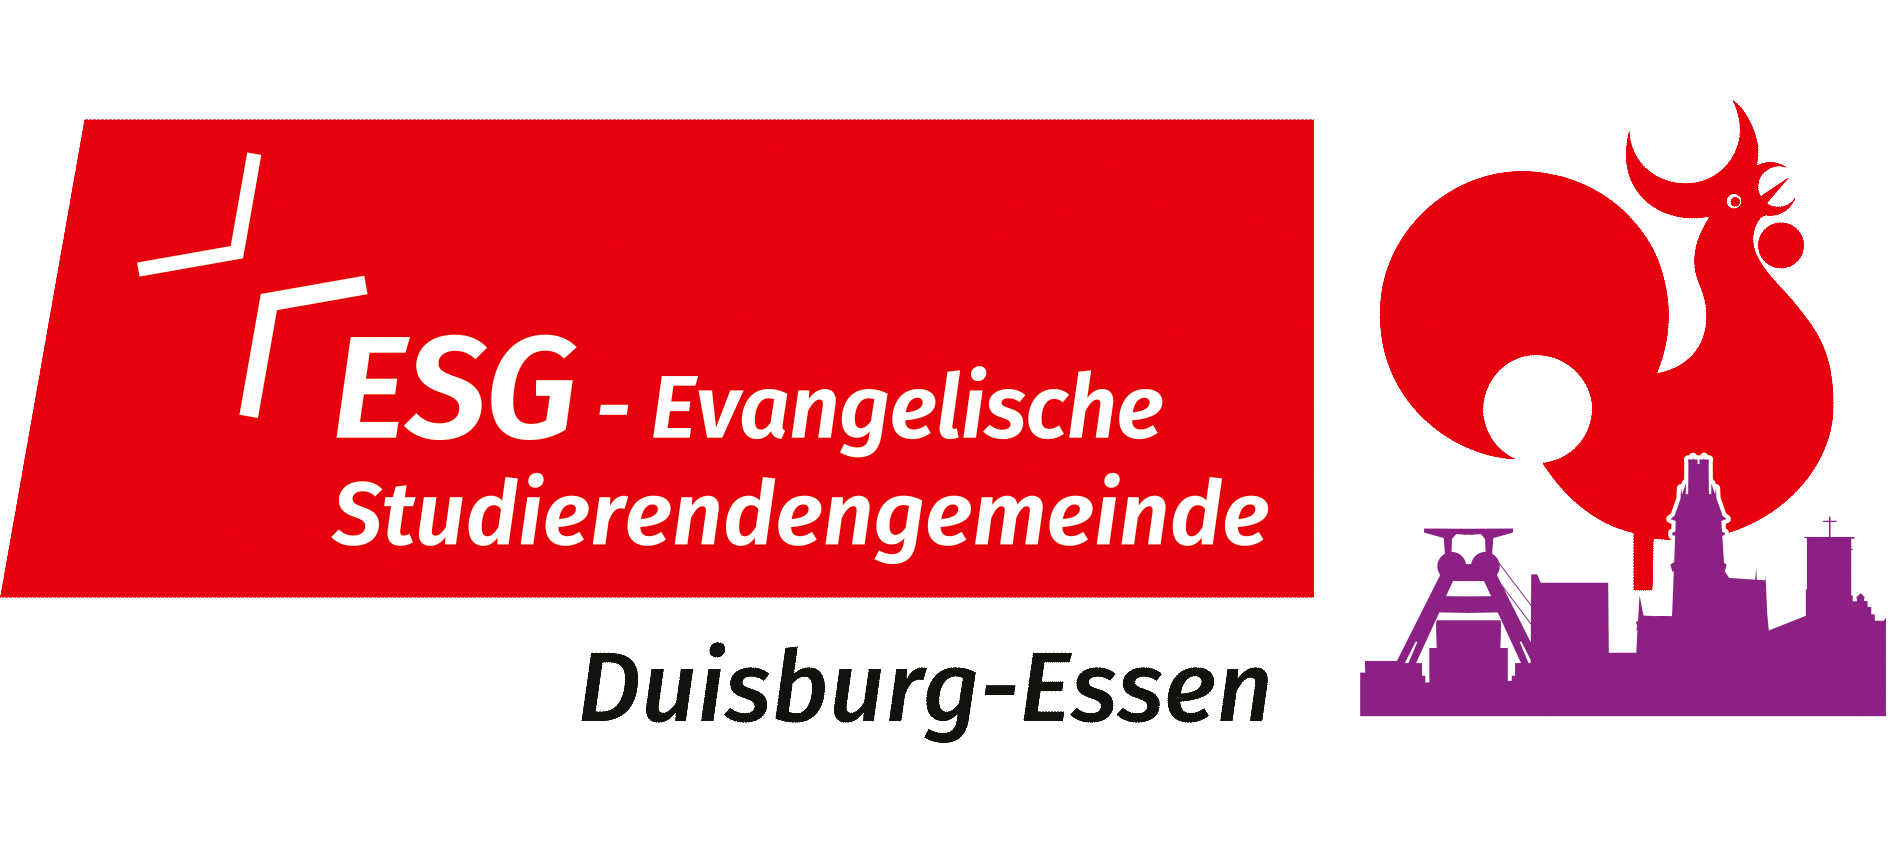 Evangelische Studierenden-Gemeinde der Universität Duisburg-Essen